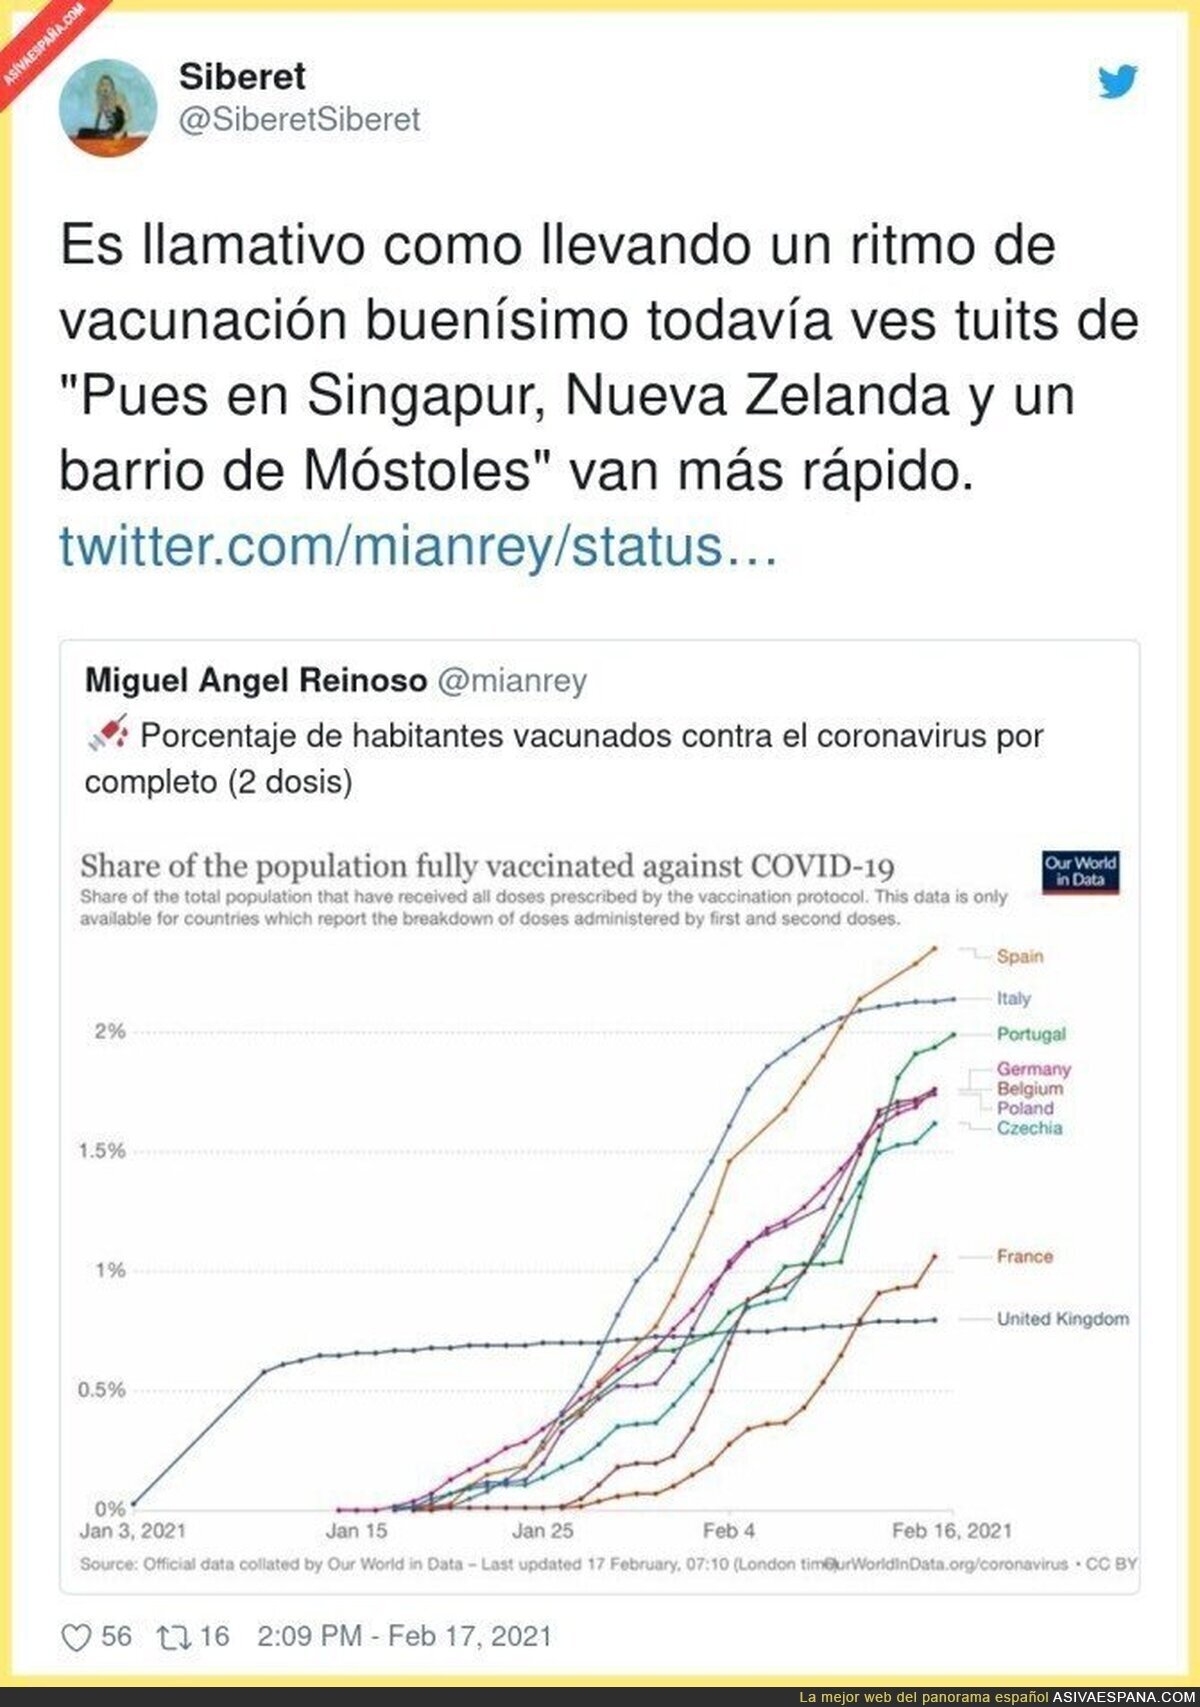 España está haciendo un gran trabajo de vacunación del covid19